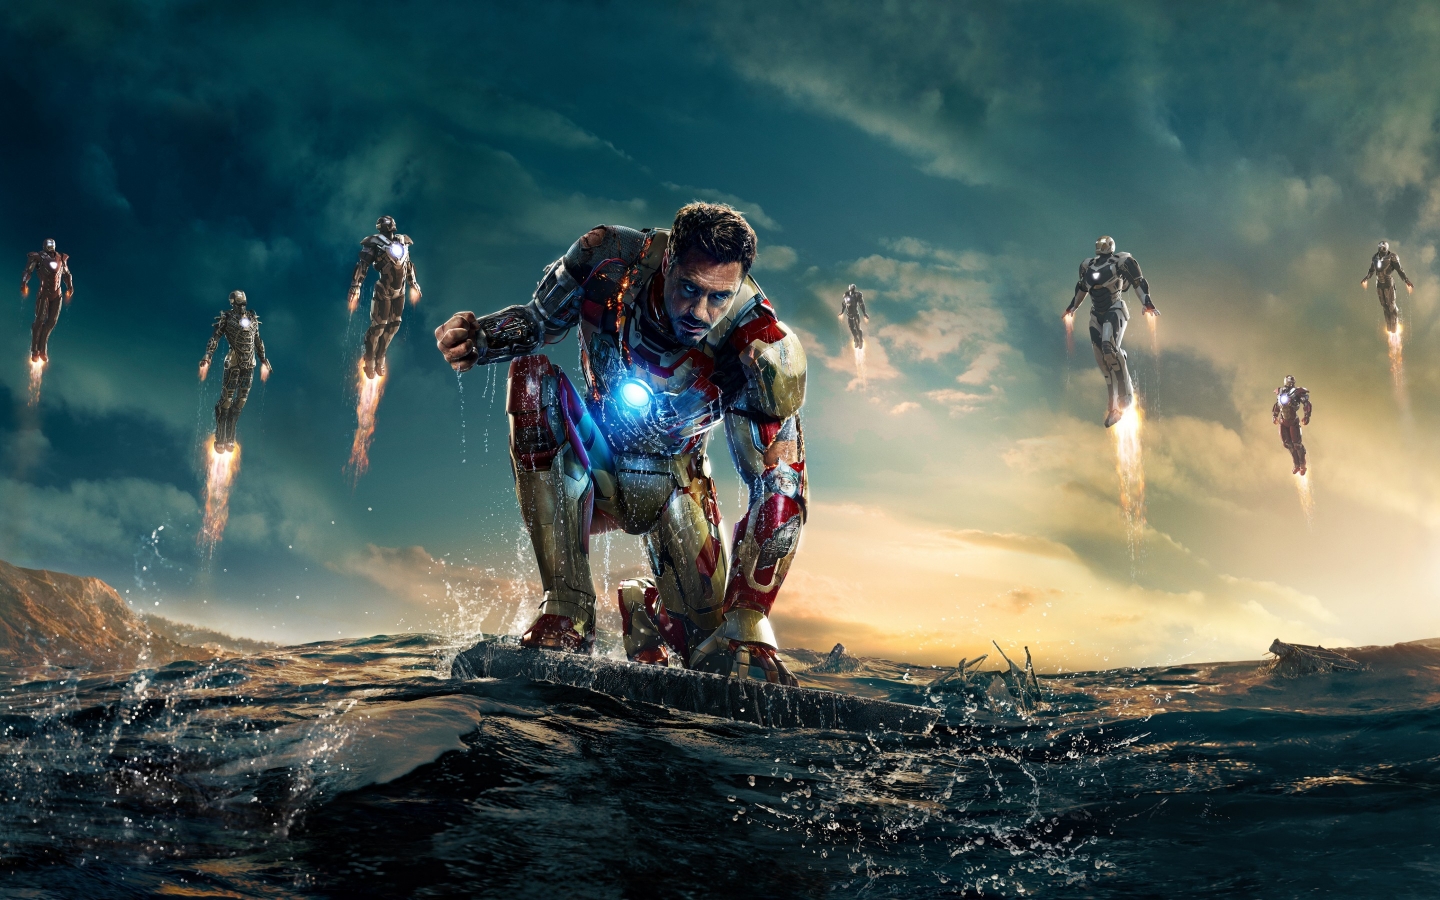 Iron Man 3 Robert Downey Jr for 1440 x 900 widescreen resolution